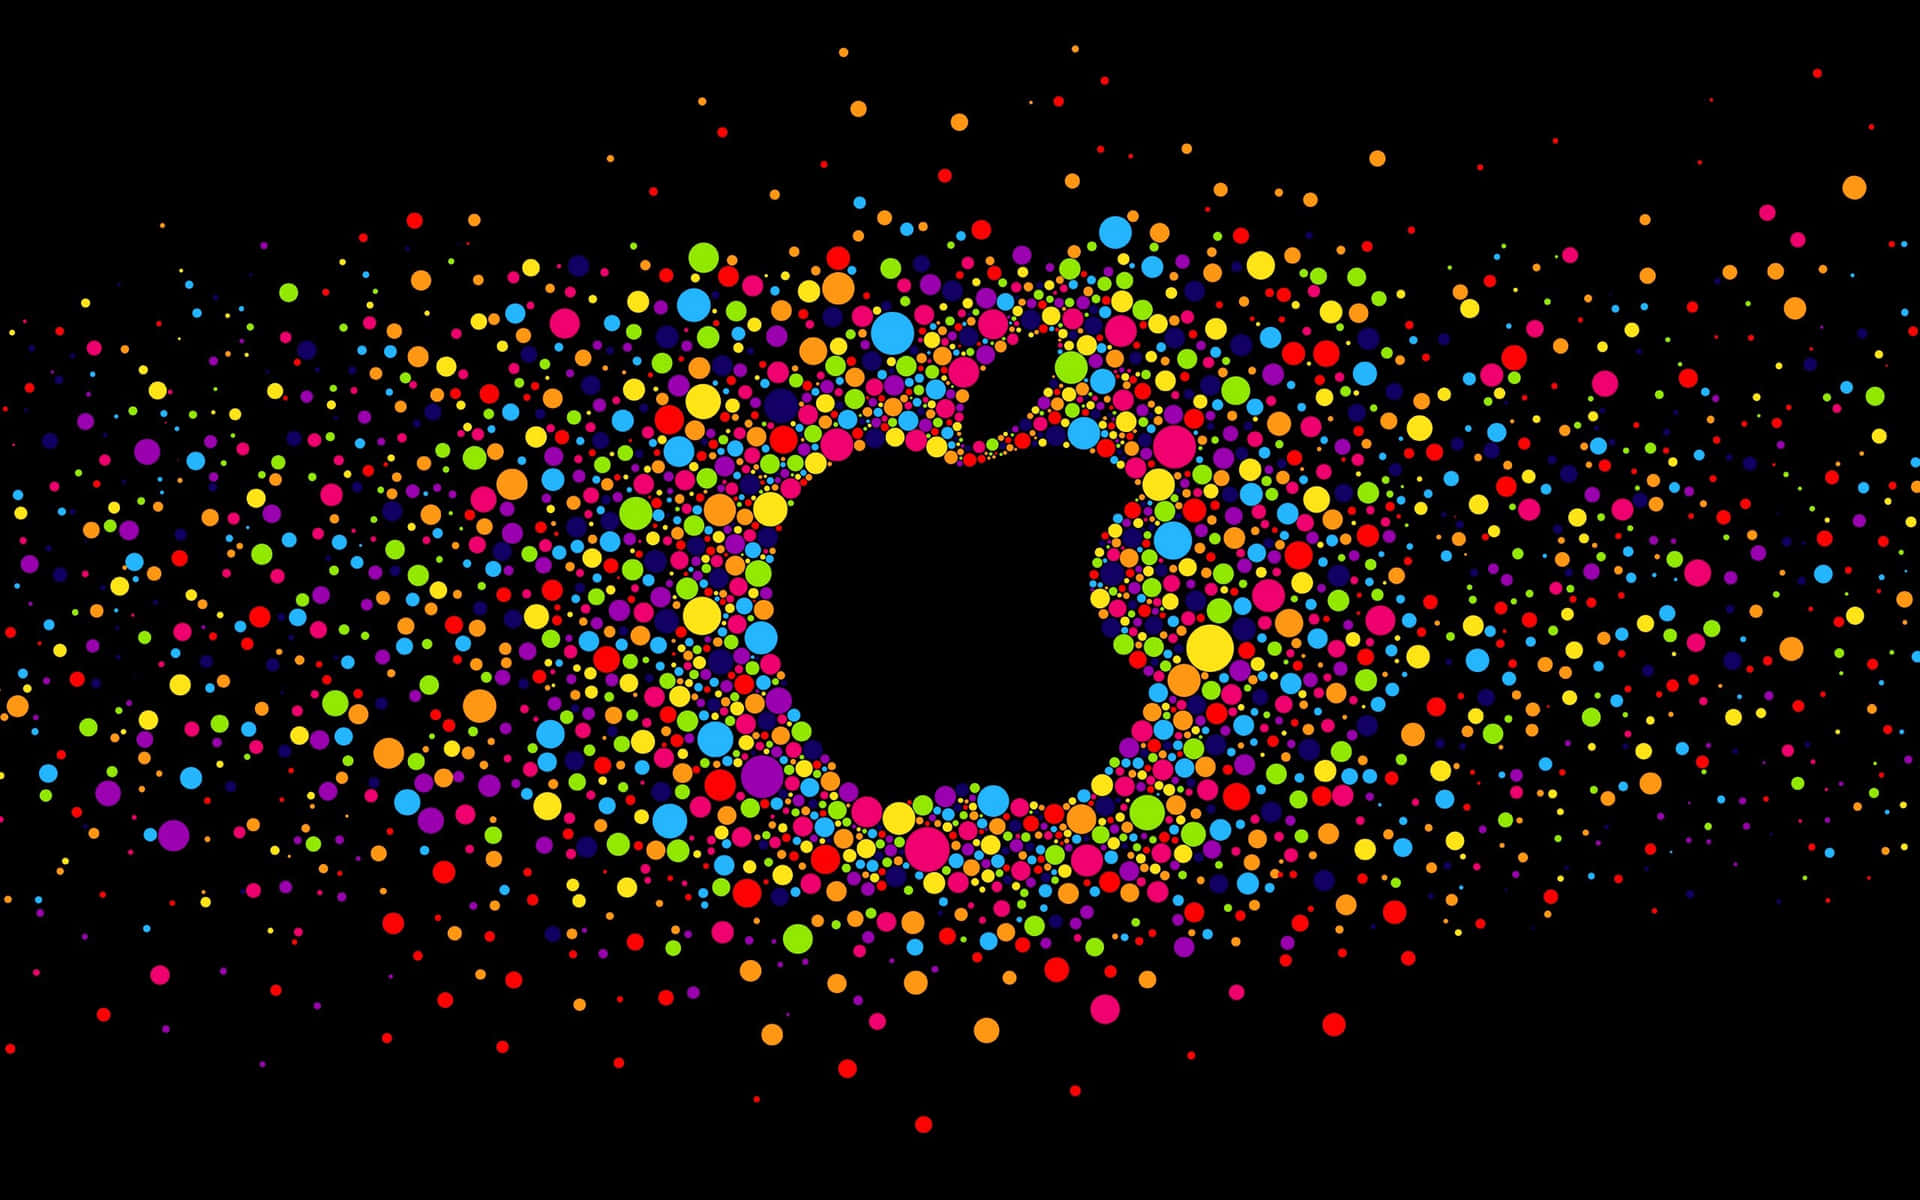 Illuminated Apple Logo on a Dark Background